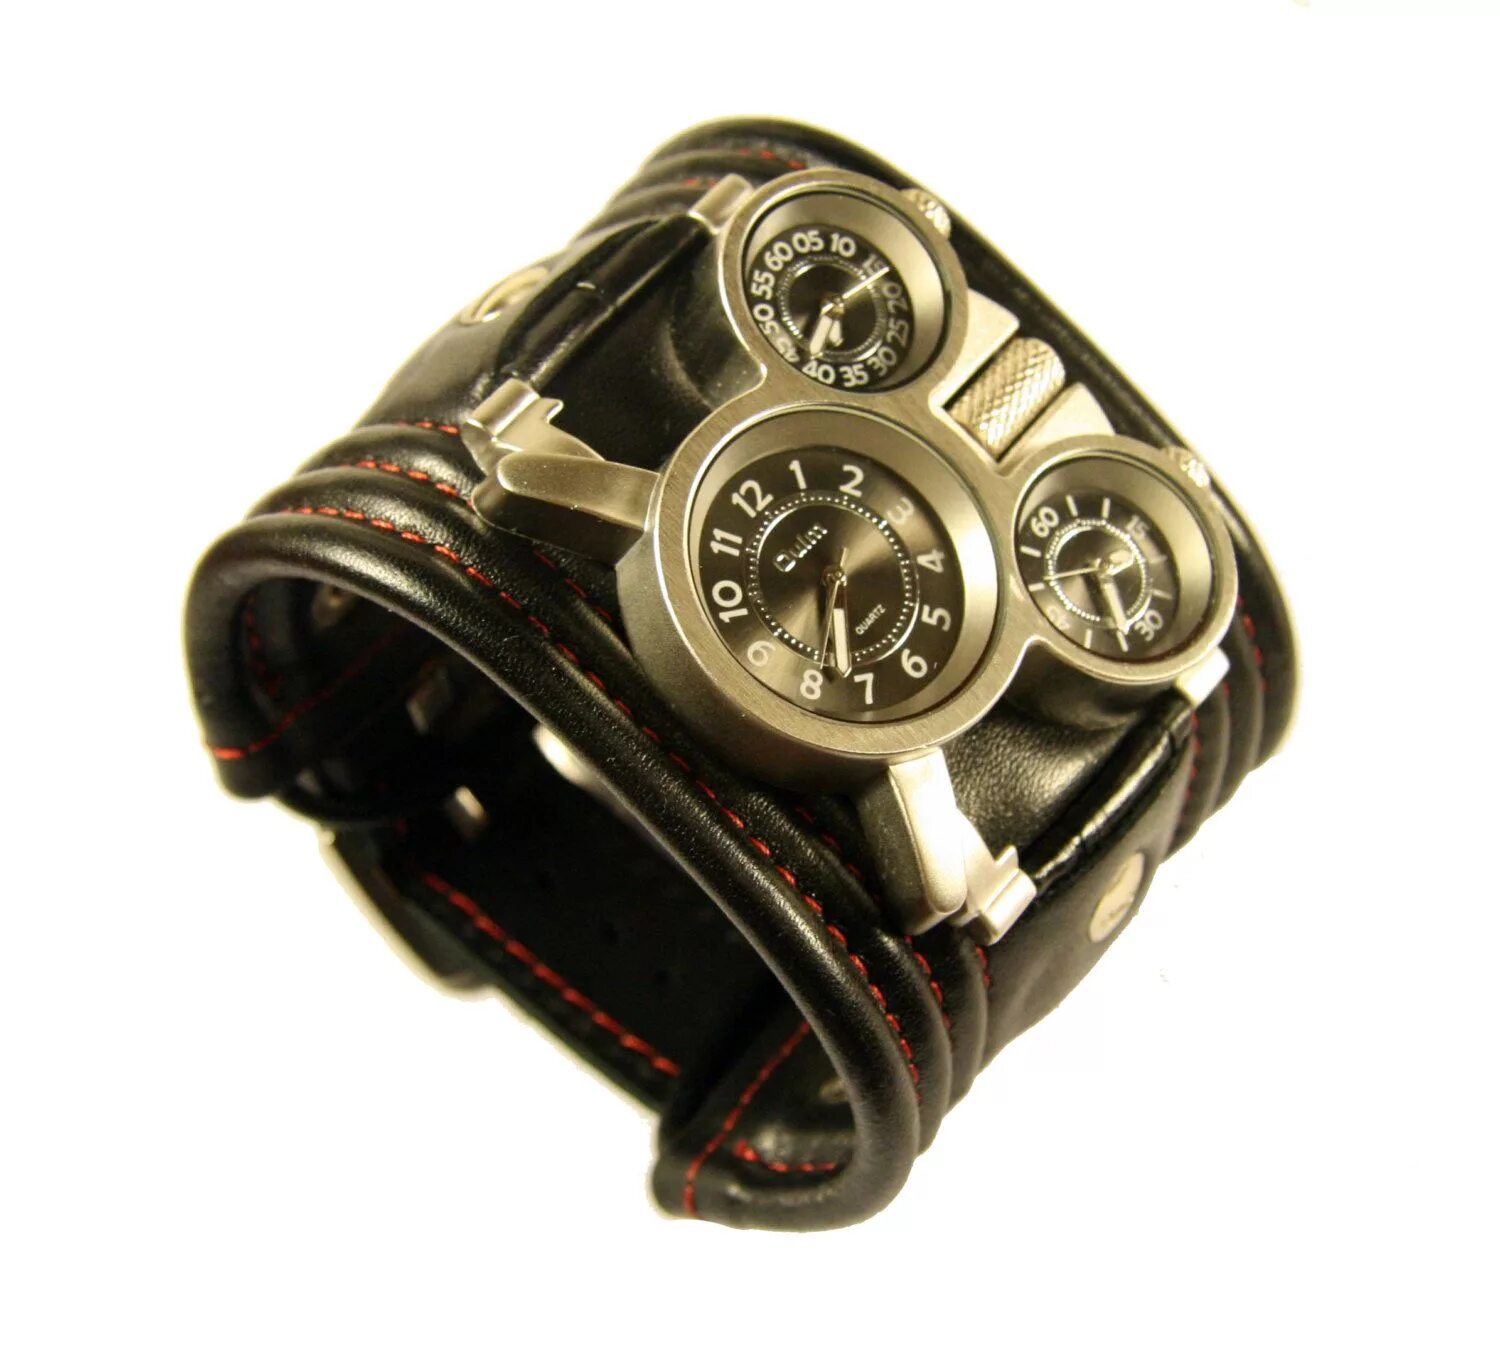 Кожаный браслет часы мужской. Кожаный браслет для часов. Часы с кожаным браслетом мужские. Часы браслет мужские кожа. Часы с широким кожаным браслетом.